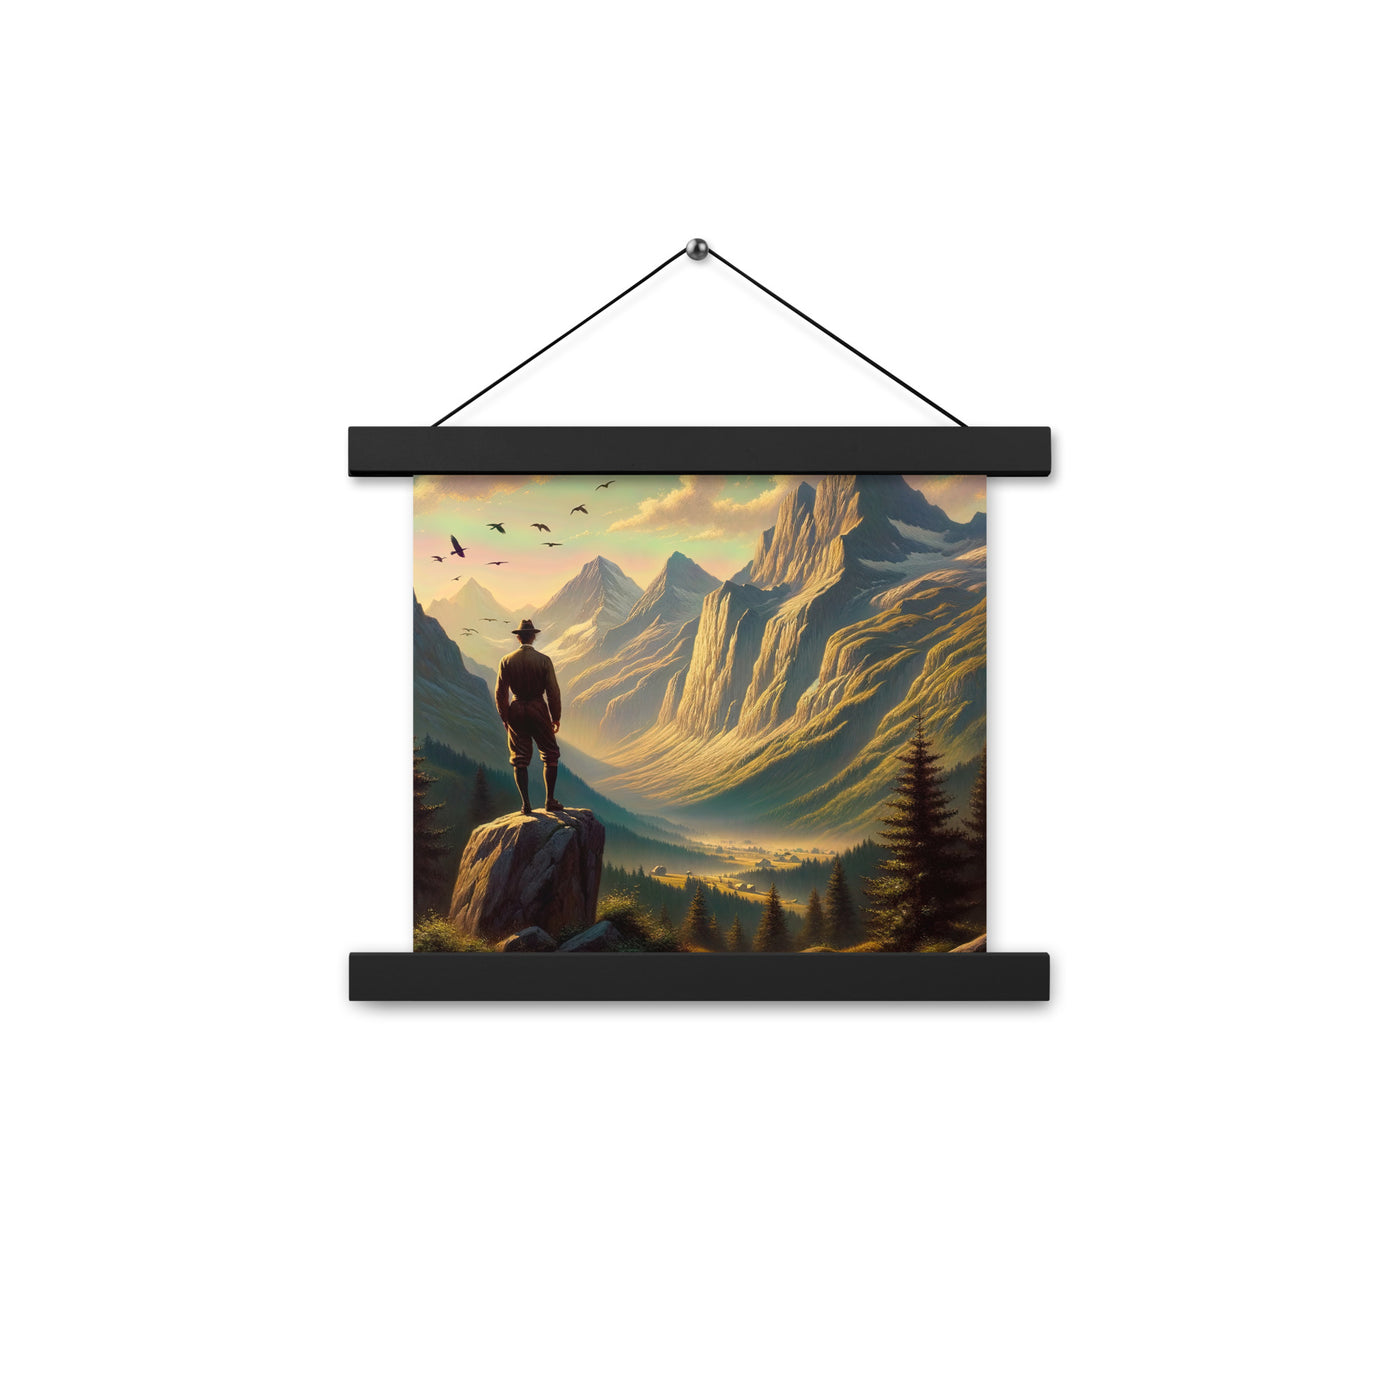 Ölgemälde eines Schweizer Wanderers in den Alpen bei goldenem Sonnenlicht - Premium Poster mit Aufhängung wandern xxx yyy zzz 25.4 x 25.4 cm